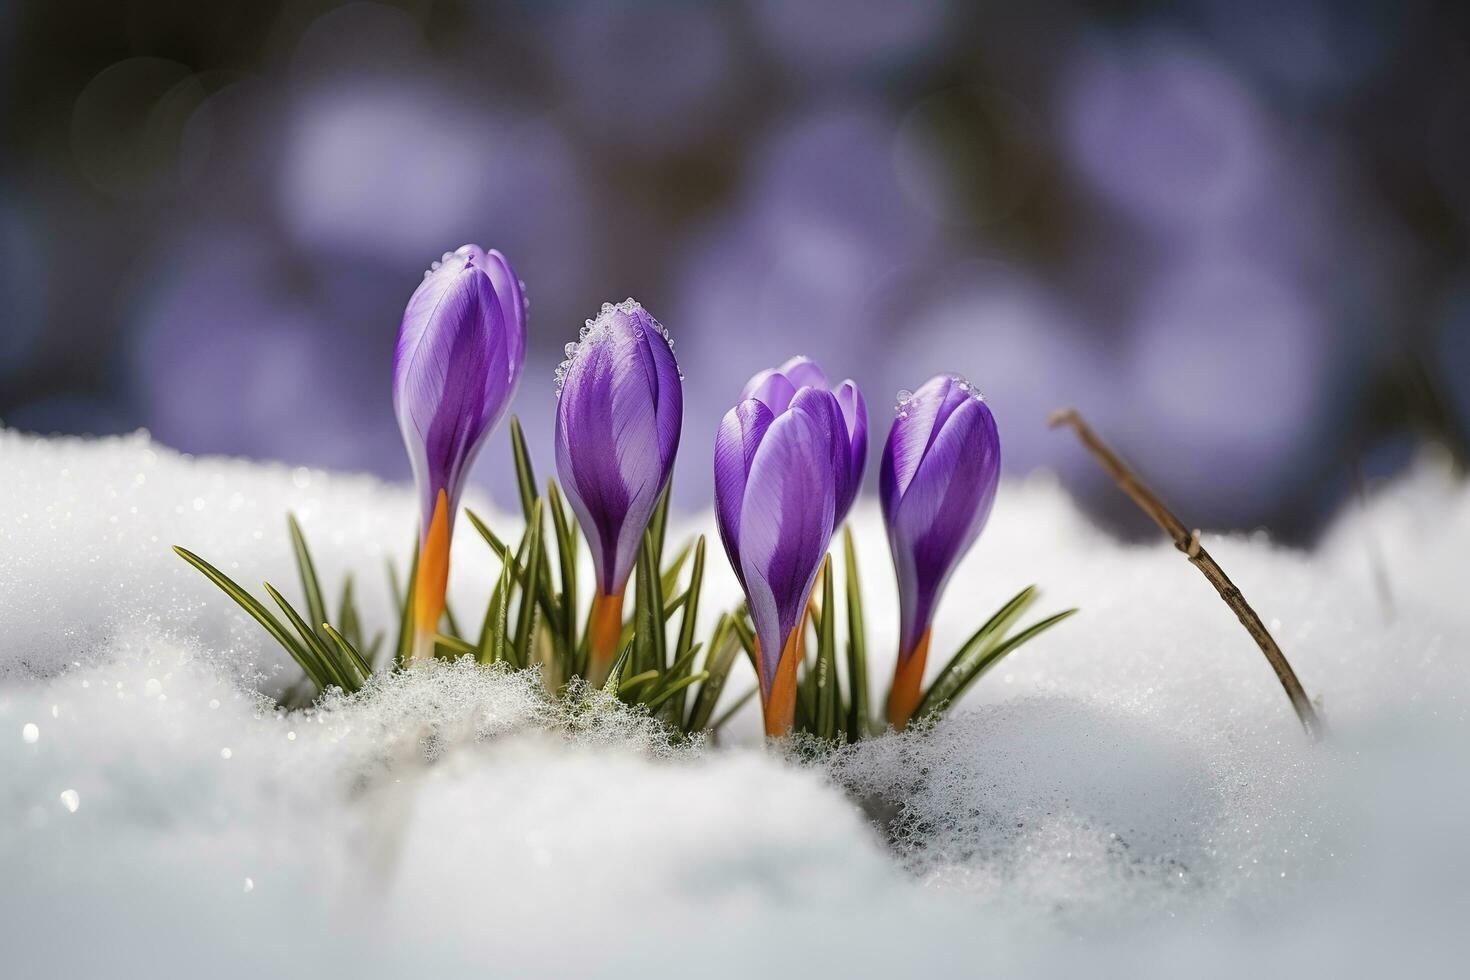 Krokusse - - Blühen lila Blumen Herstellung ihr Weg von unter das Schnee im früh Frühling, Nahansicht mit Raum zum Text , generieren ai foto